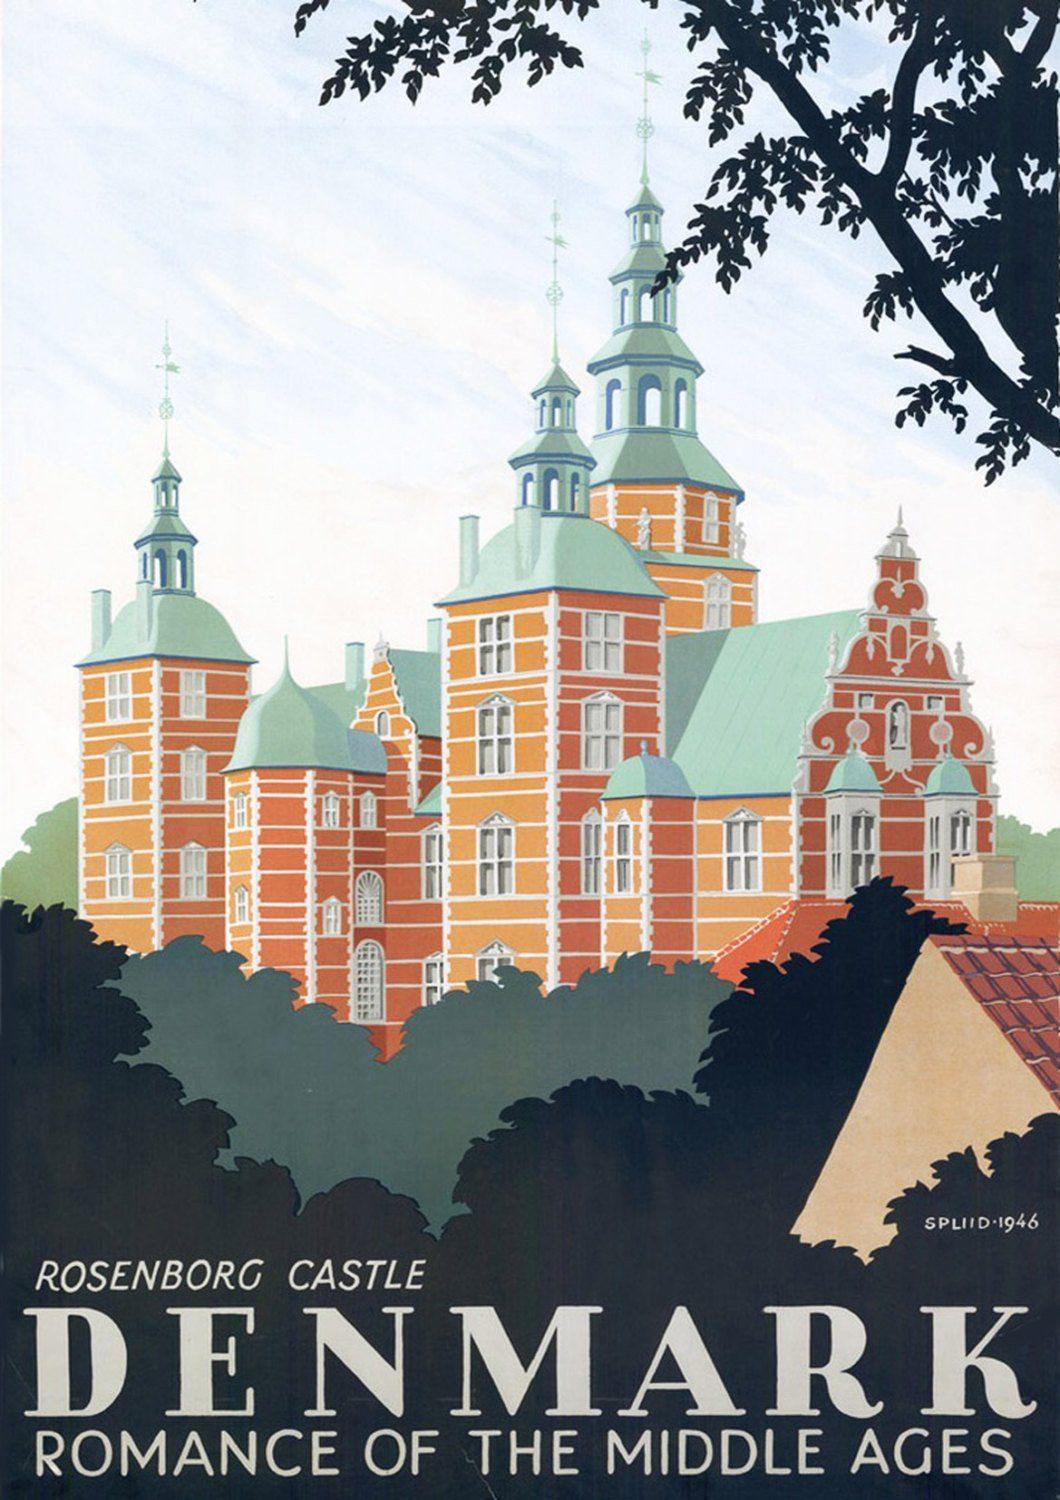 DENMARK TRAVEL POSTER: Vintage Danish Castle Print - Pimlico Prints